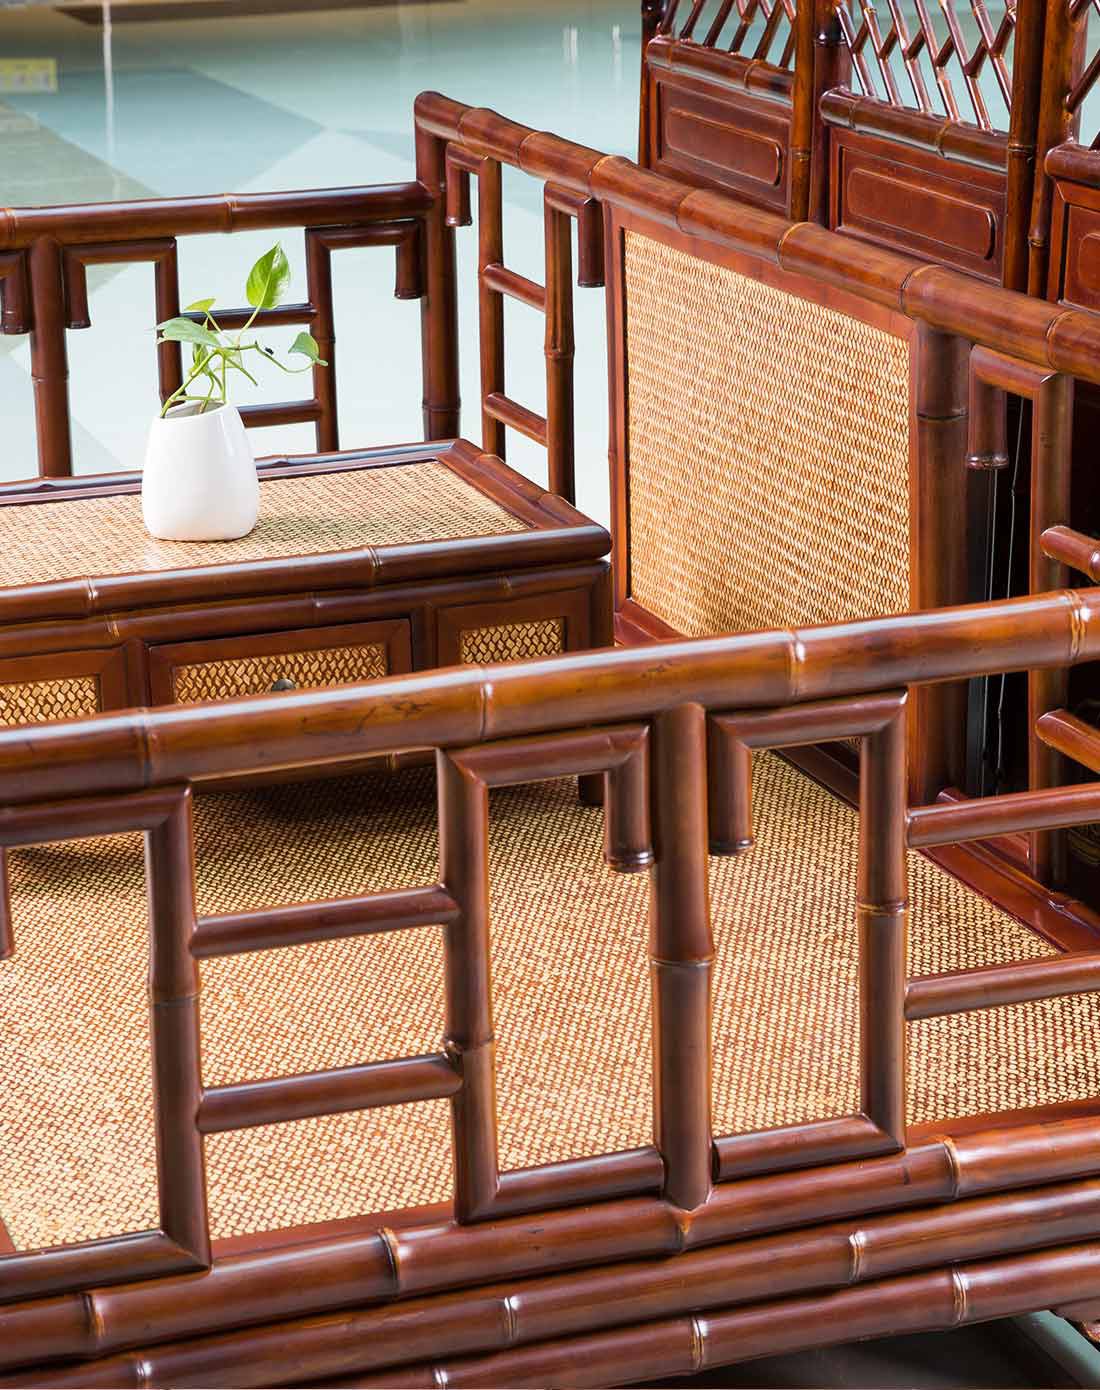 中式古典原竹雕刻双人竹榻沙发